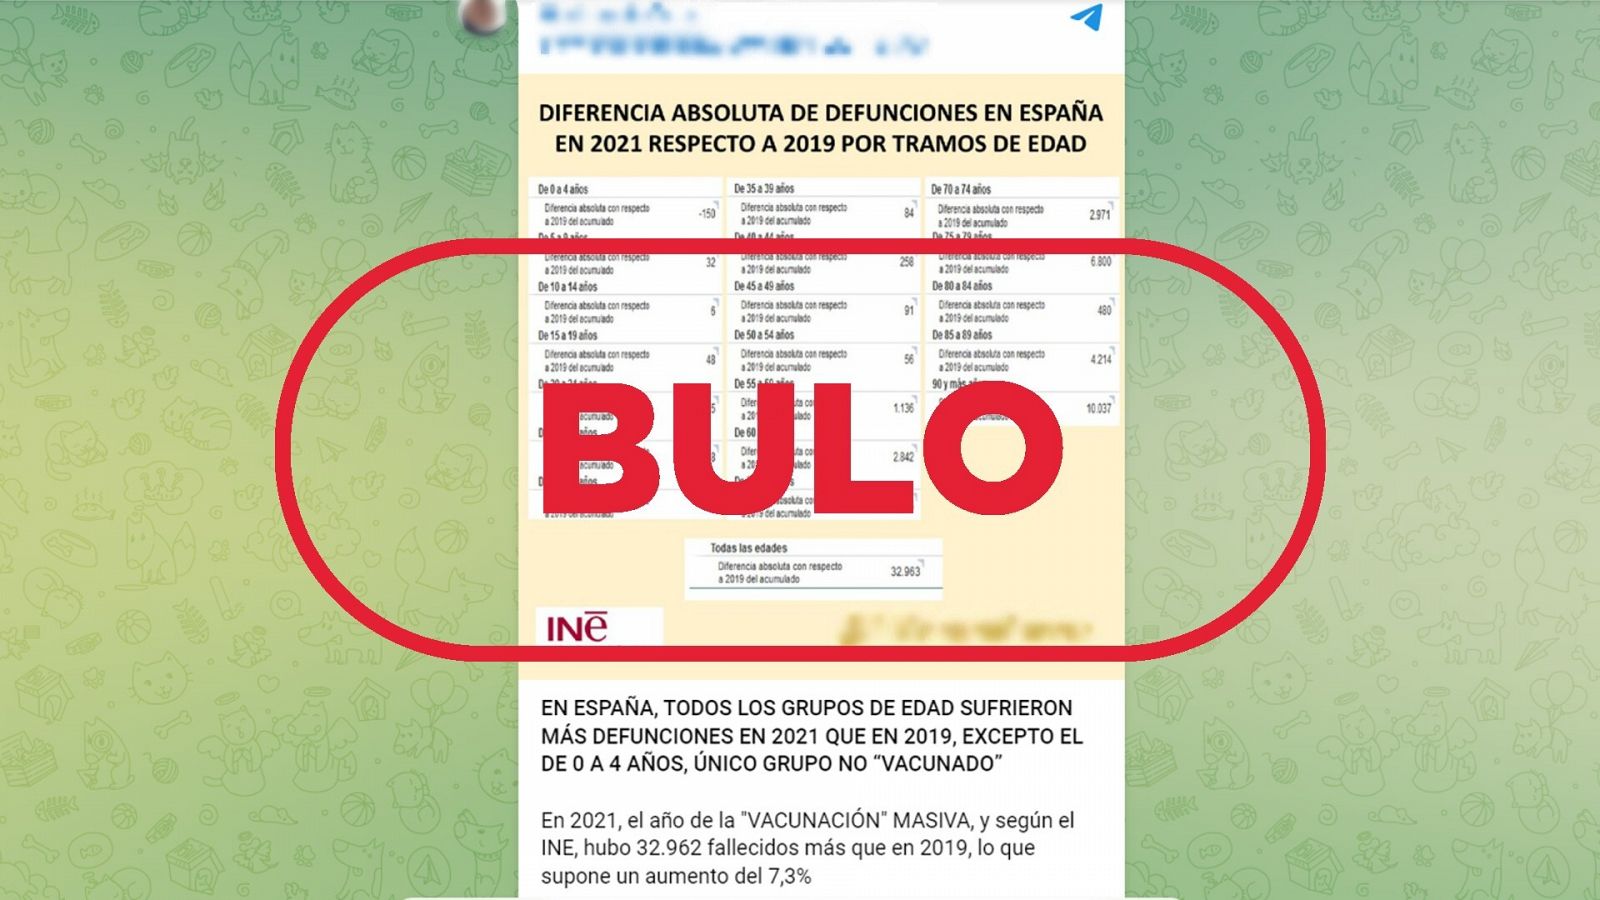 Mensaje que difunde el bulo de más fallecidos en 2021 que en 2019 debido a las vacunas con el sello BULO